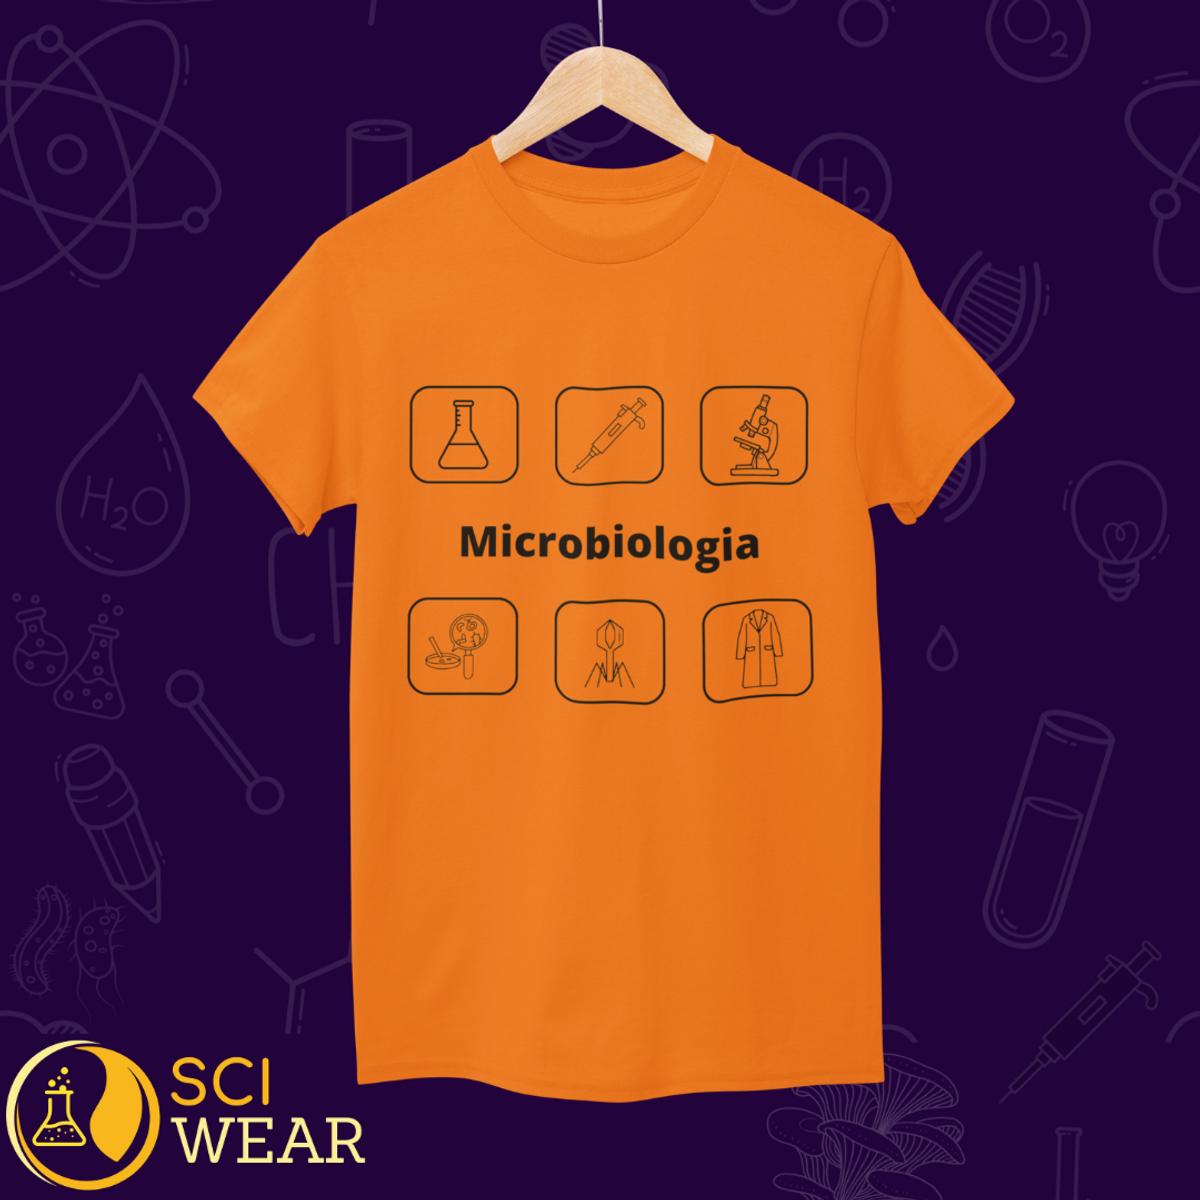 Nome do produto: Microbiologia - T-shirt